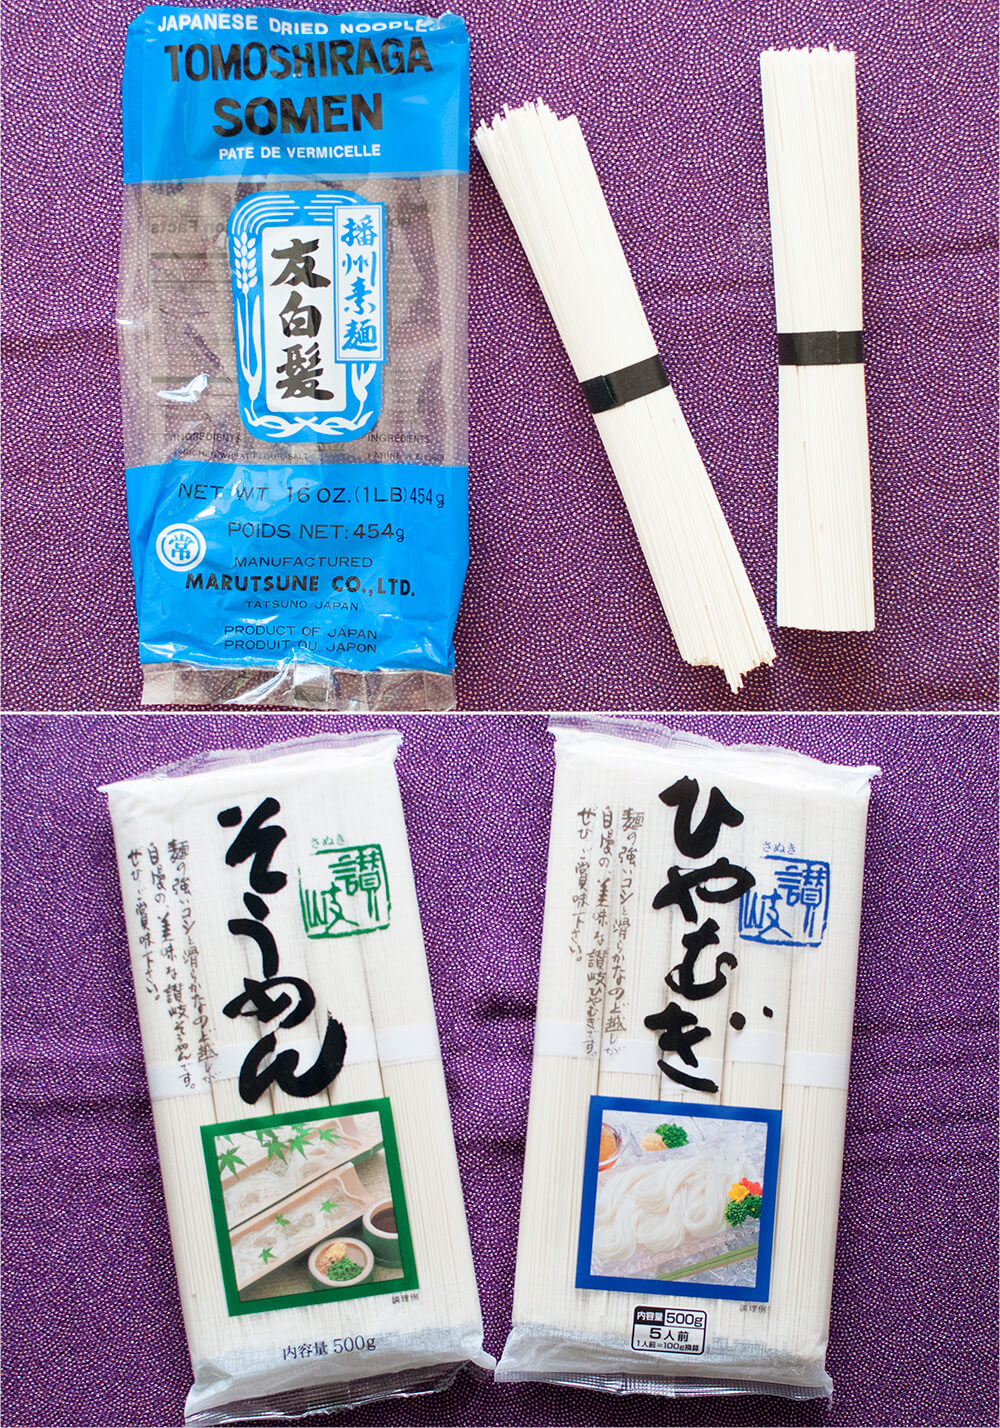 Dried thin noodles - sōmen and hiyamugi.